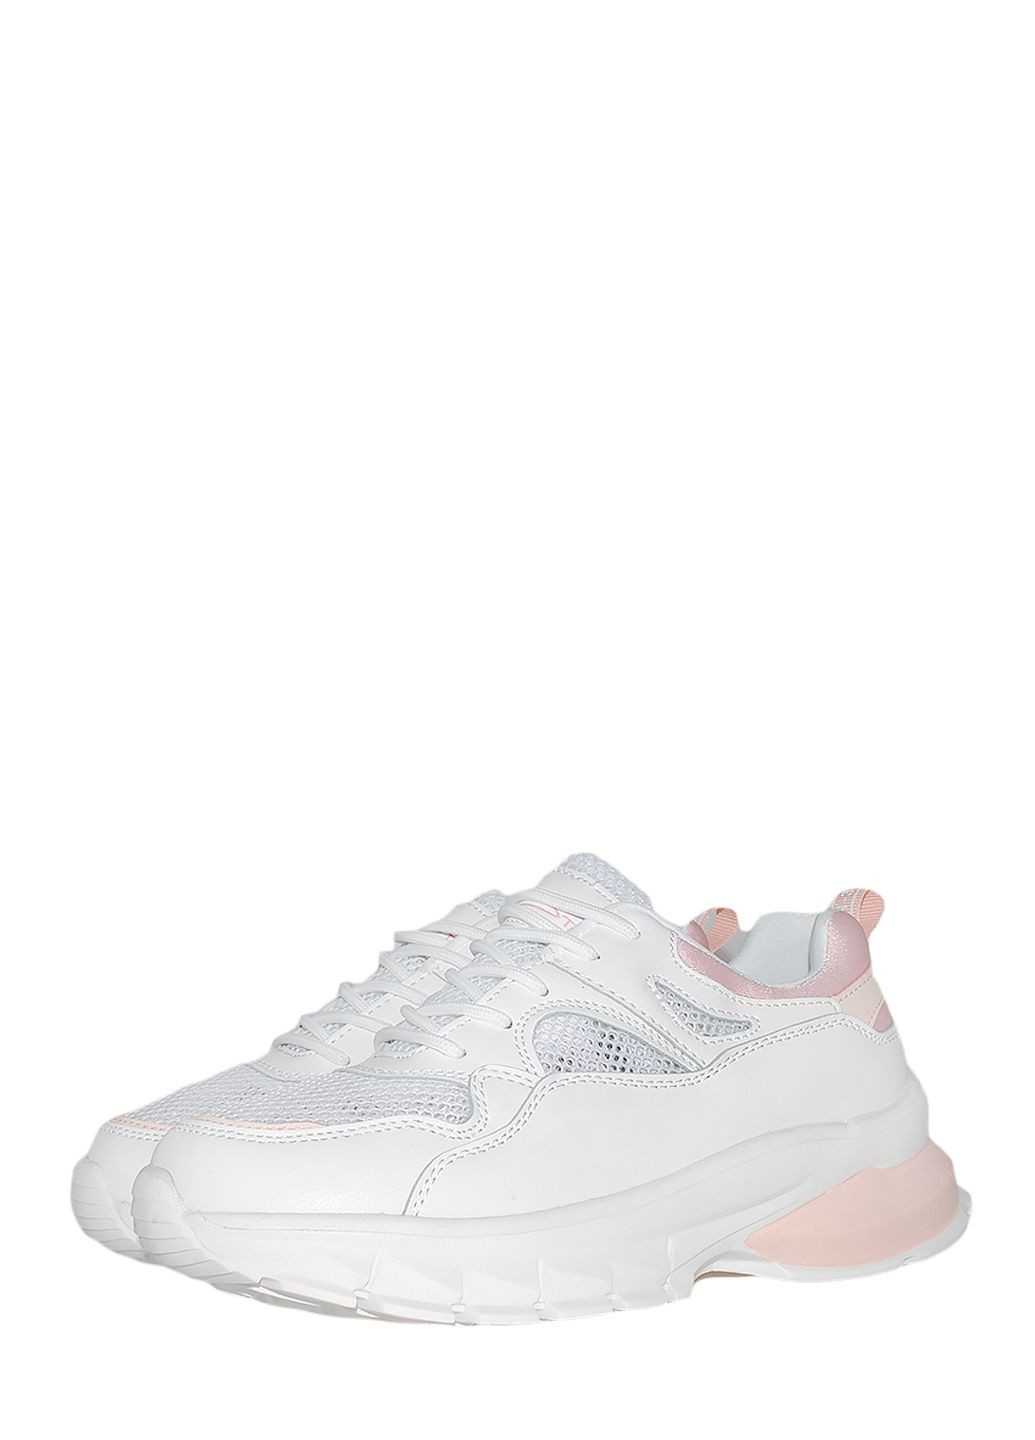 Белые демисезонные кроссовки st3600-8 white-pink Stilli